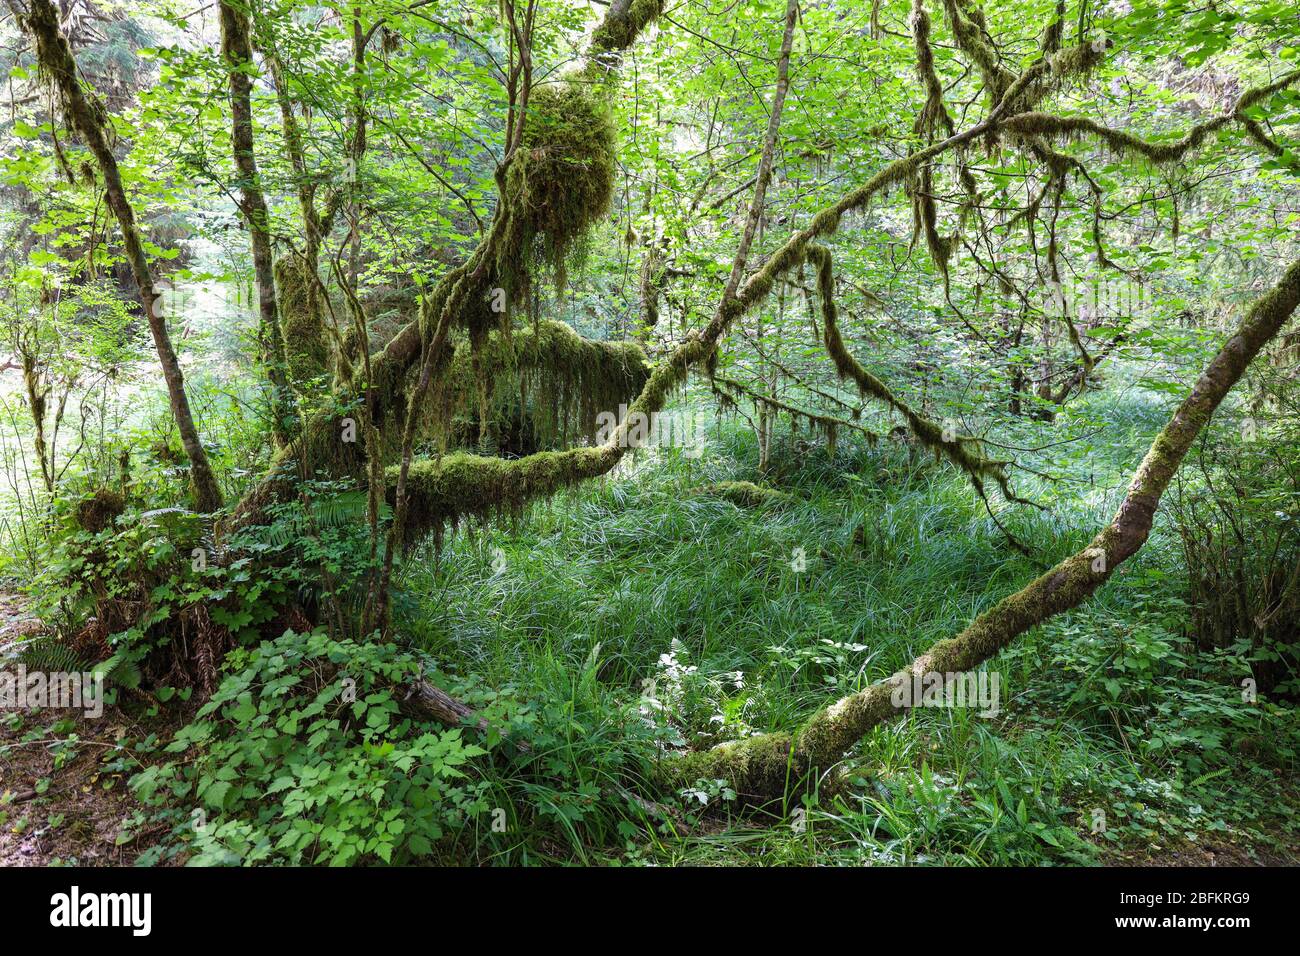 El pasillo de Mosses Trail en el bosque de lluvia de Hoh del Parque Nacional Olímpico está bordeado de árboles viejos, la mayoría patuples de hoja grande y Sitka spuces drapeados en mo Foto de stock